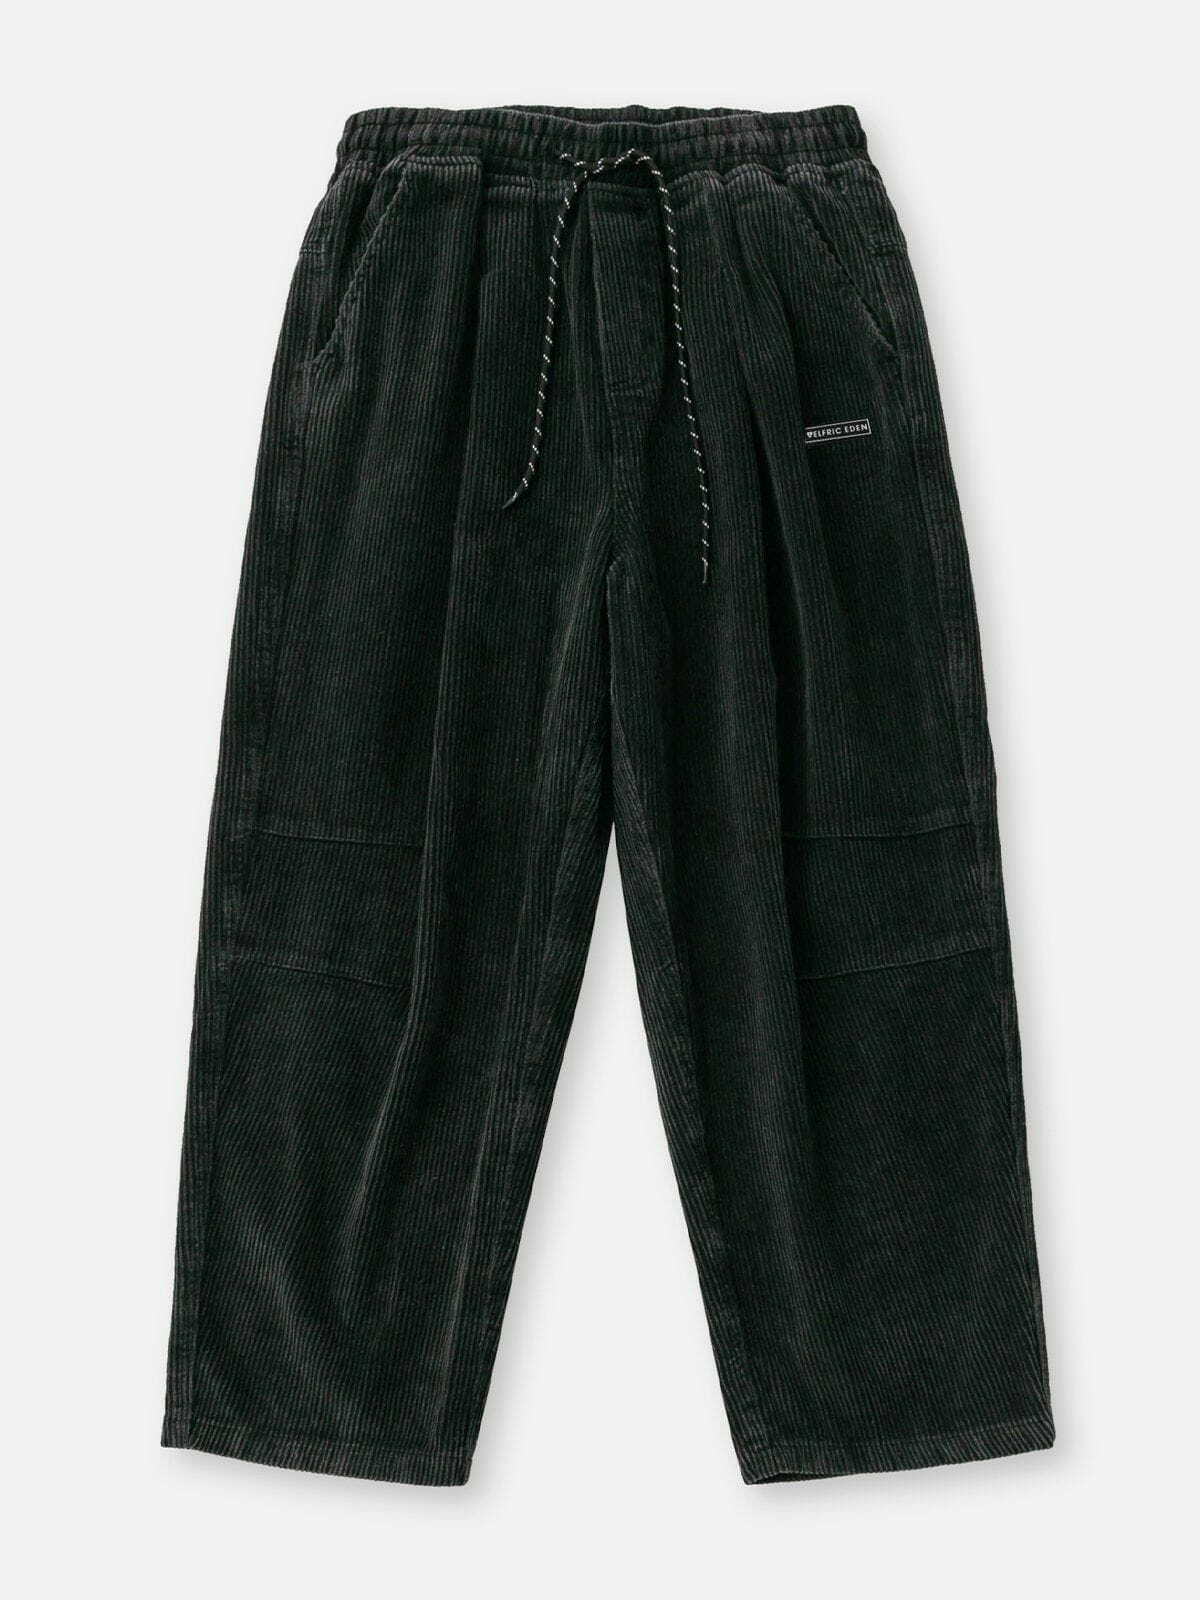 sleek corduroy black pants urban fashion essential 5208